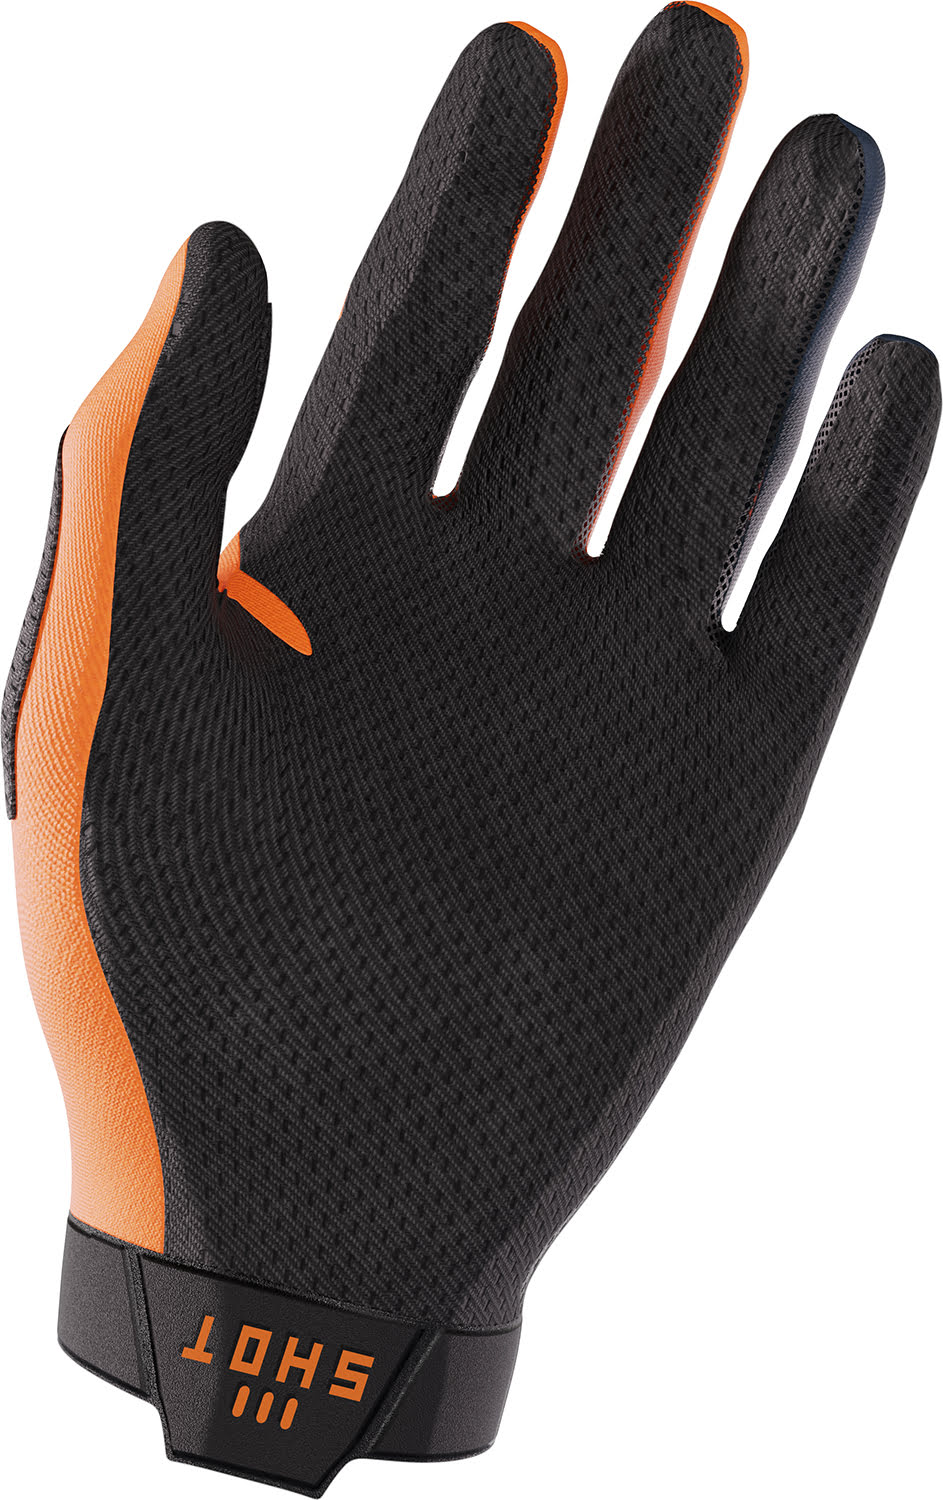 Gloves LITE Blue / Orange SHOT 